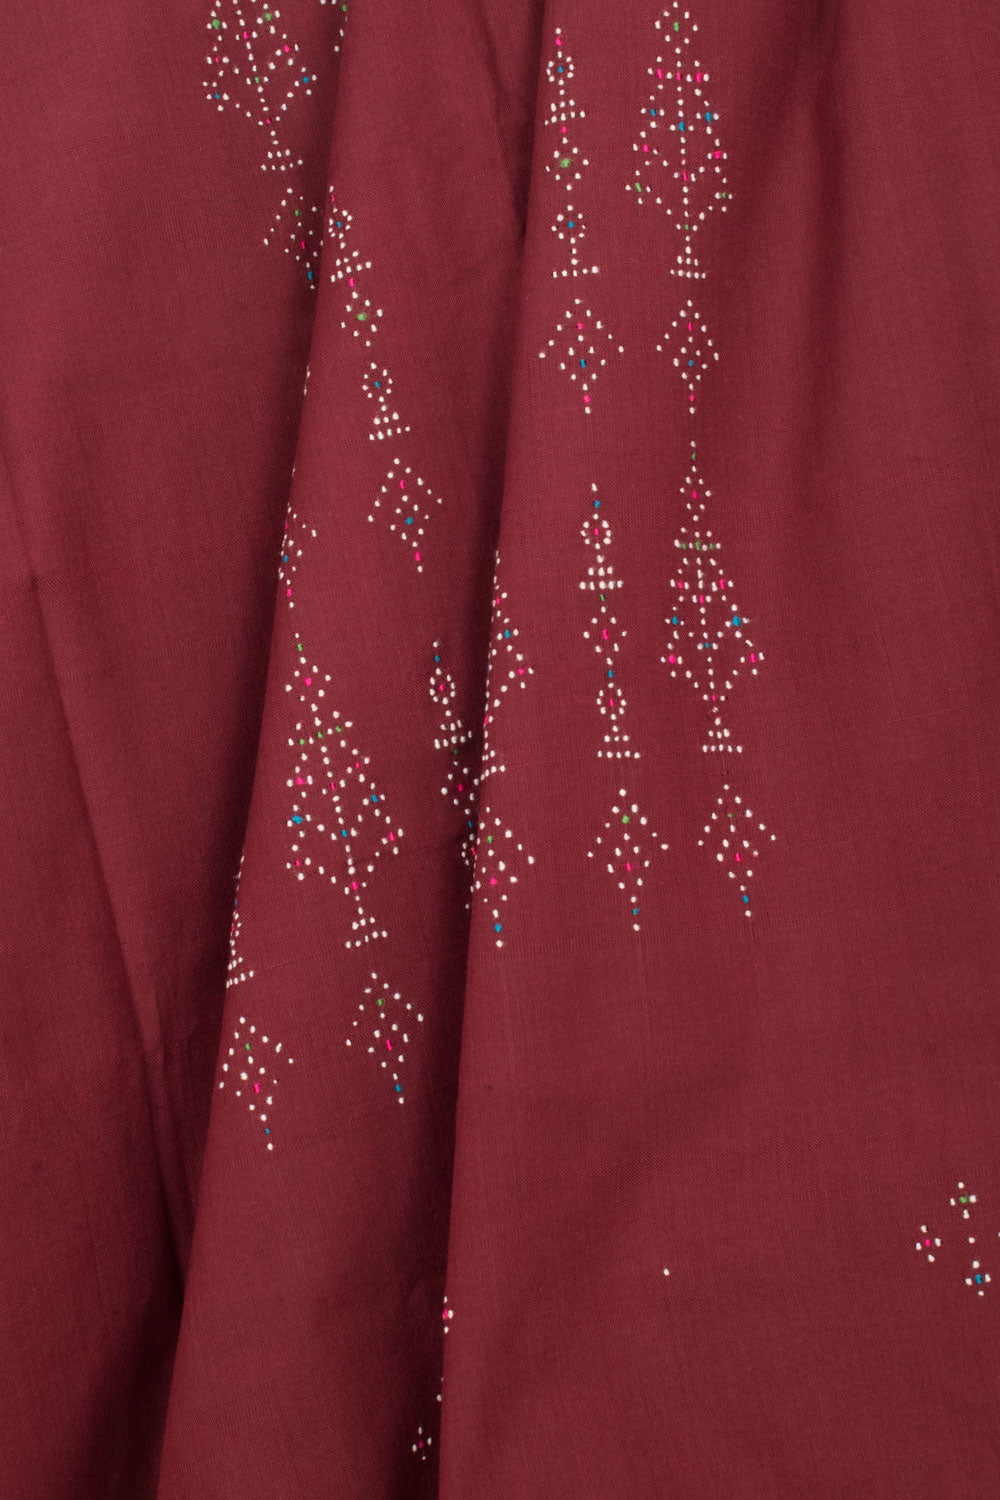 Tangaliya Cotton 2-Piece Salwar Suit Material 10058610